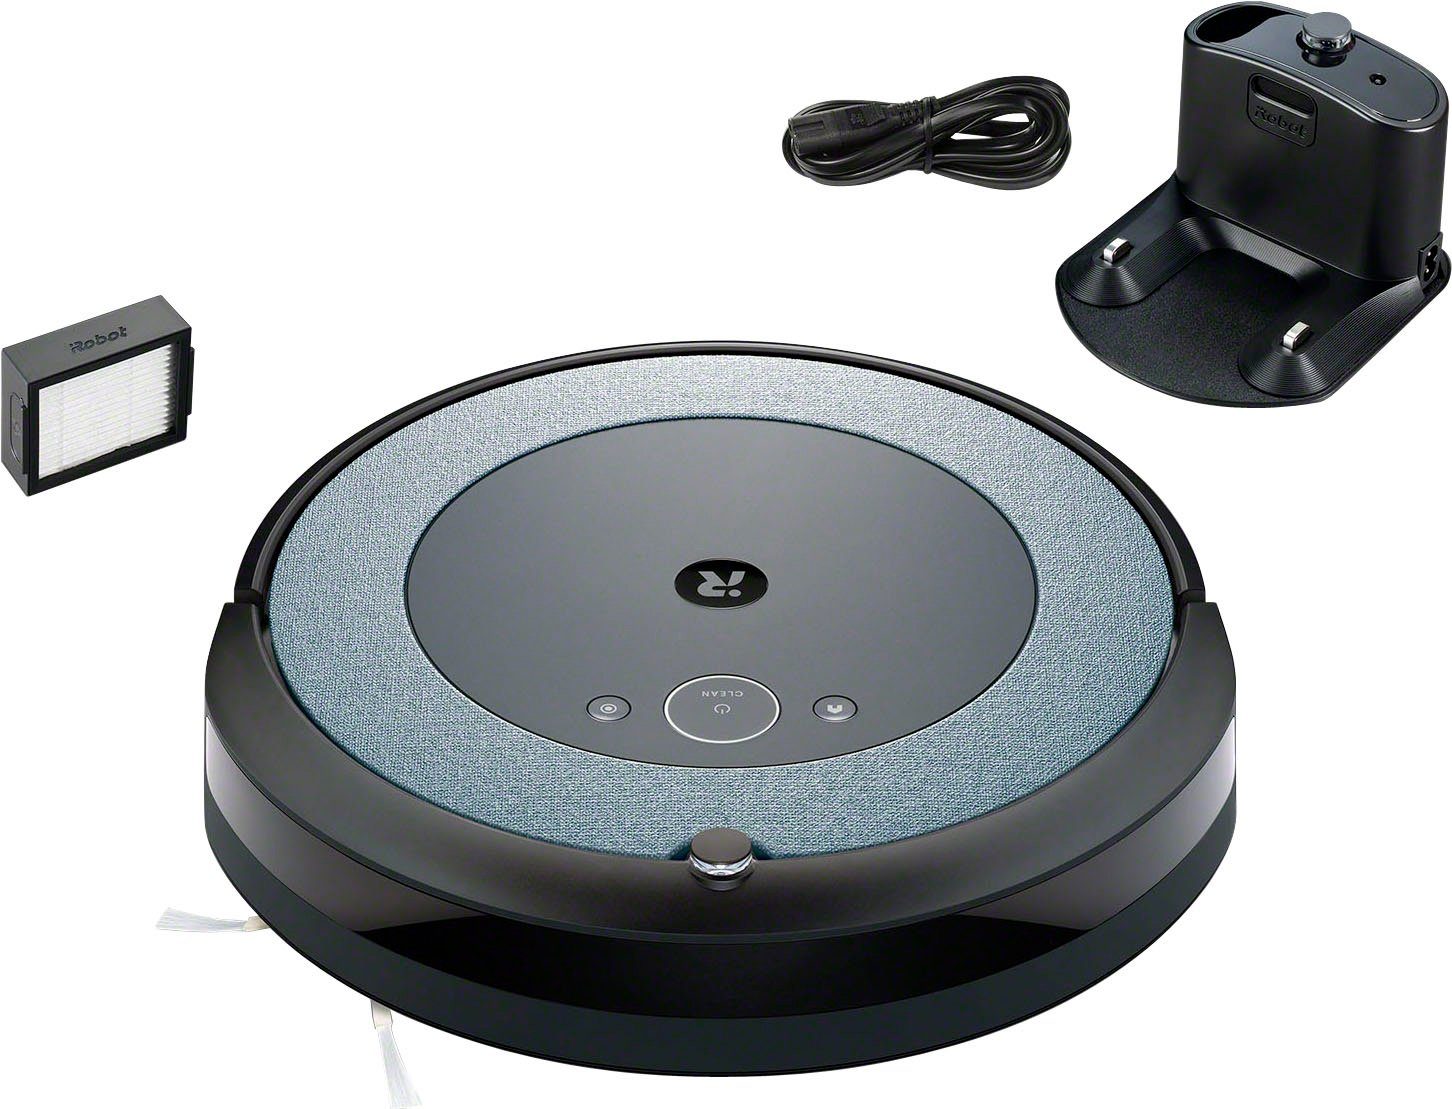 Gummibürsten zwei Böden beutellos, alle Roomba® iRobot Saugroboter WLAN-fähig, (i3152), i3 für